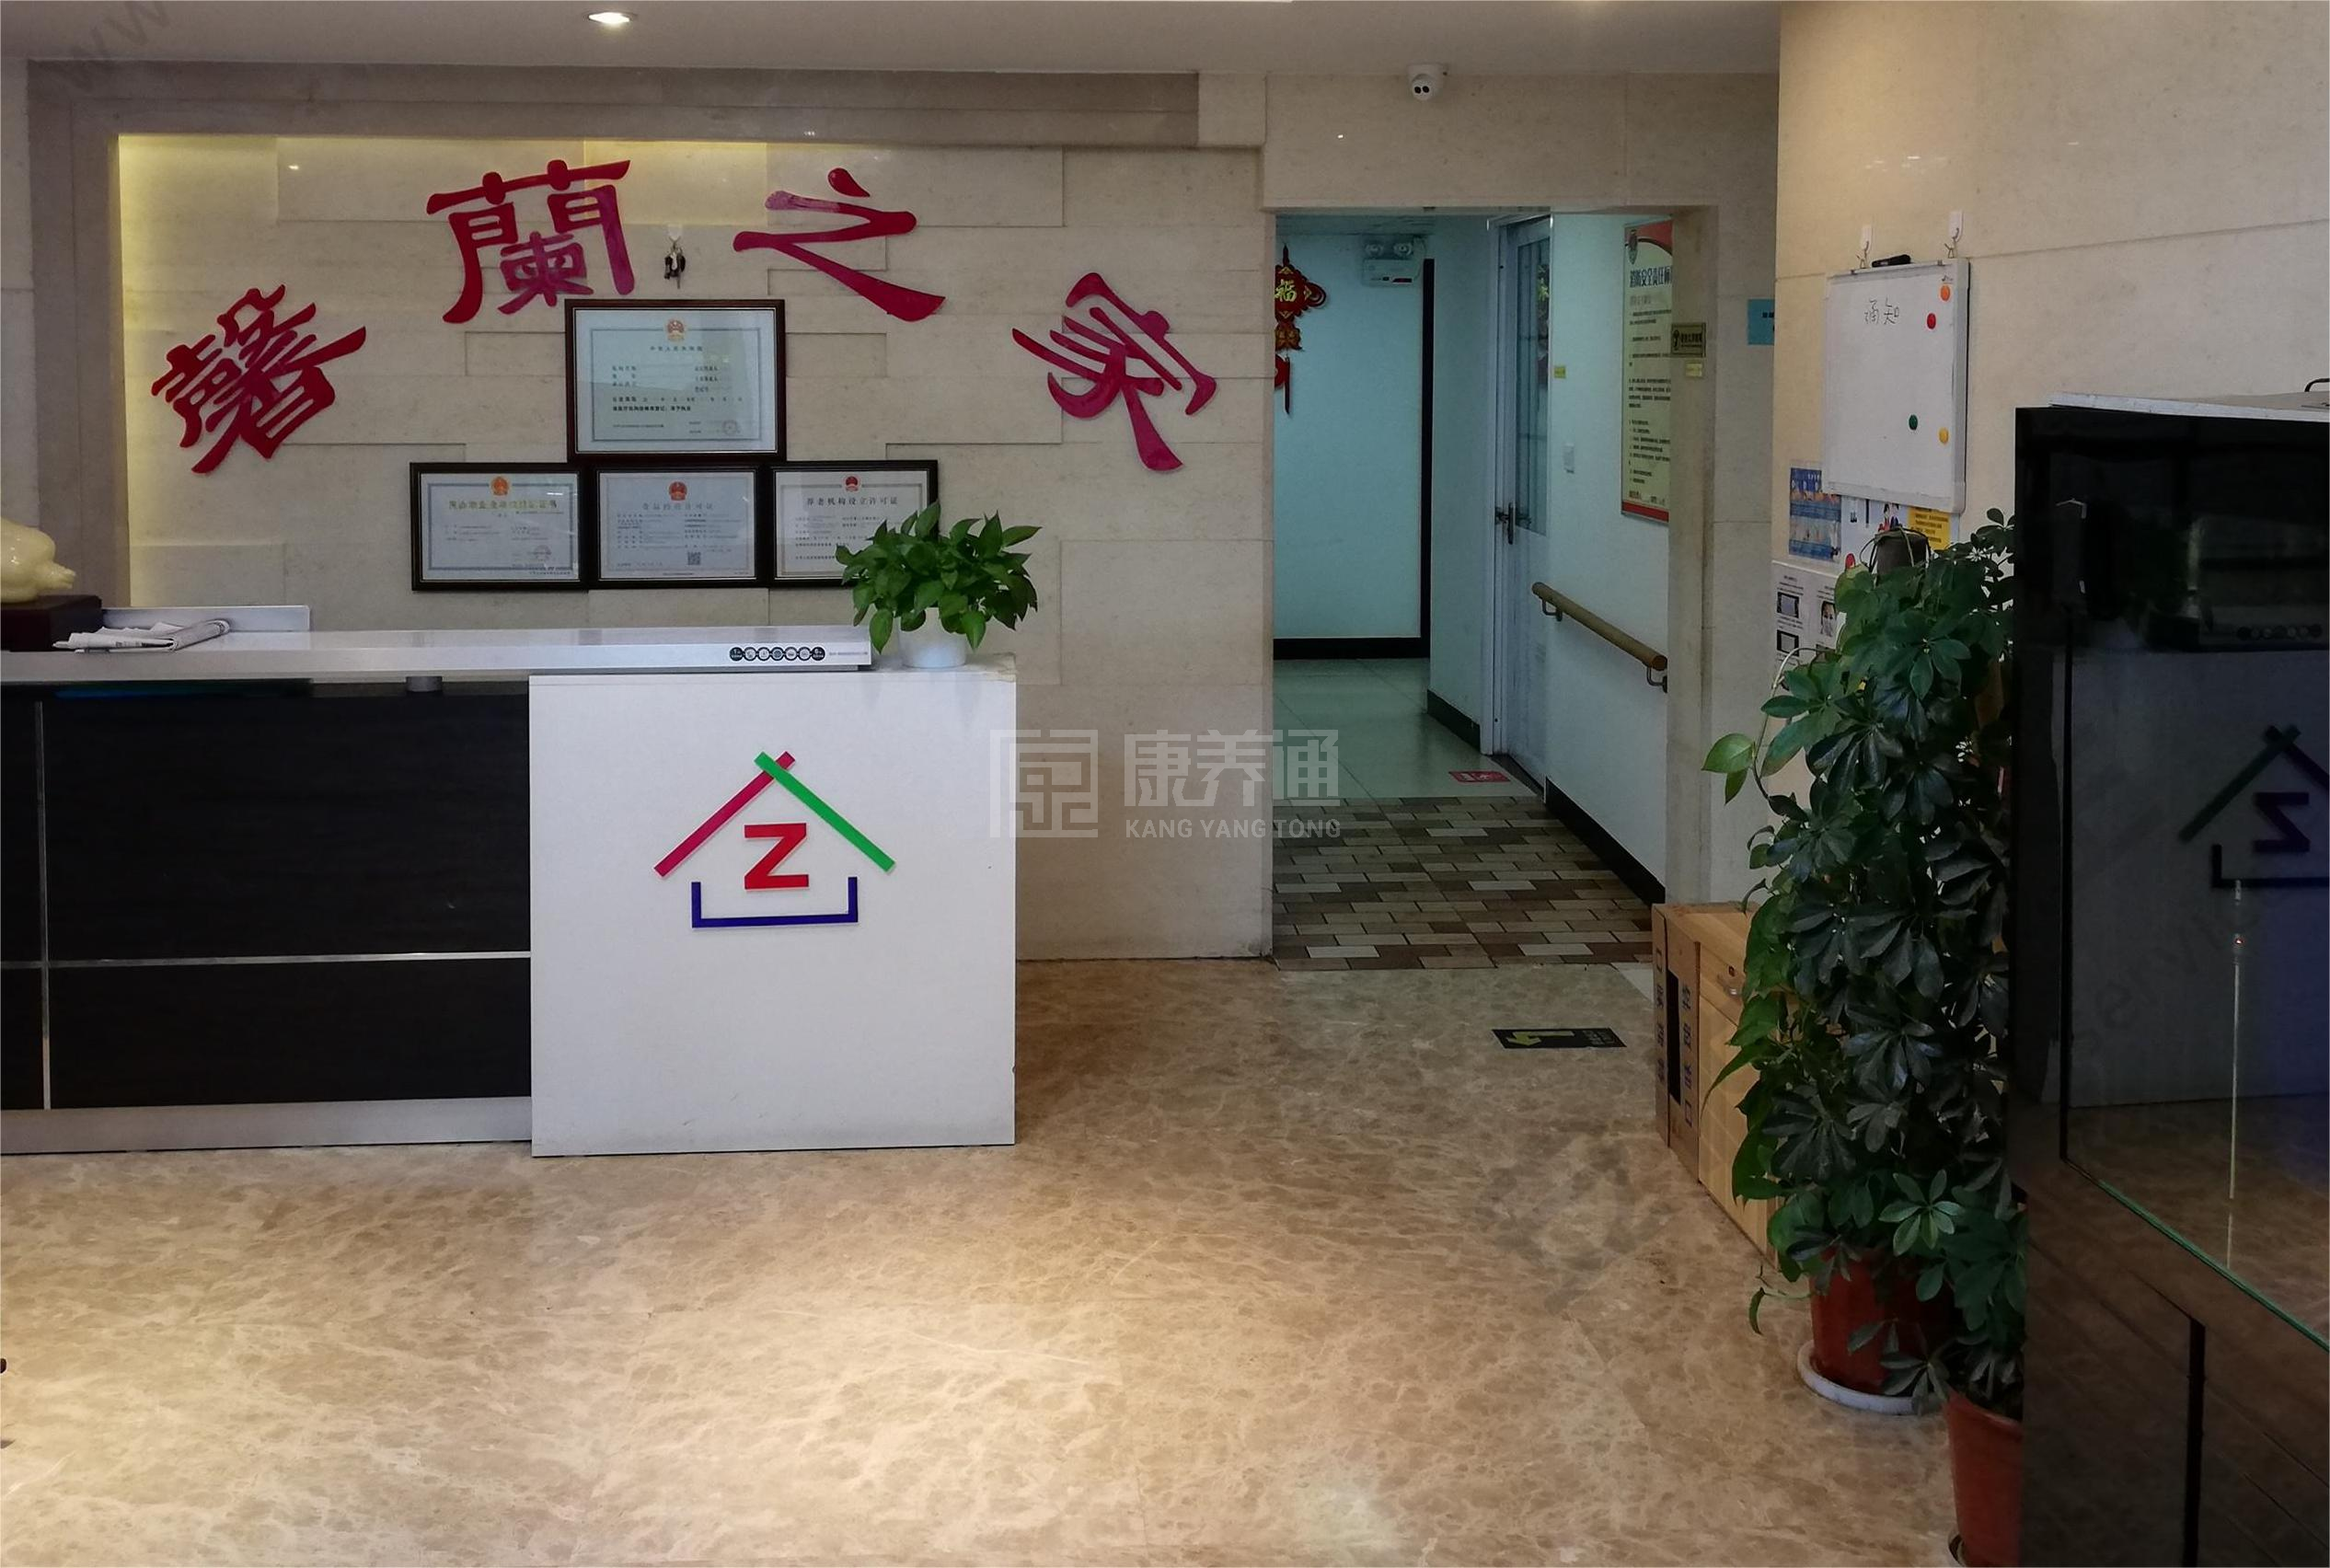 北京市朝阳区馨蘭之家老年公寓服务项目图1健康安全、营养均衡、味美可口